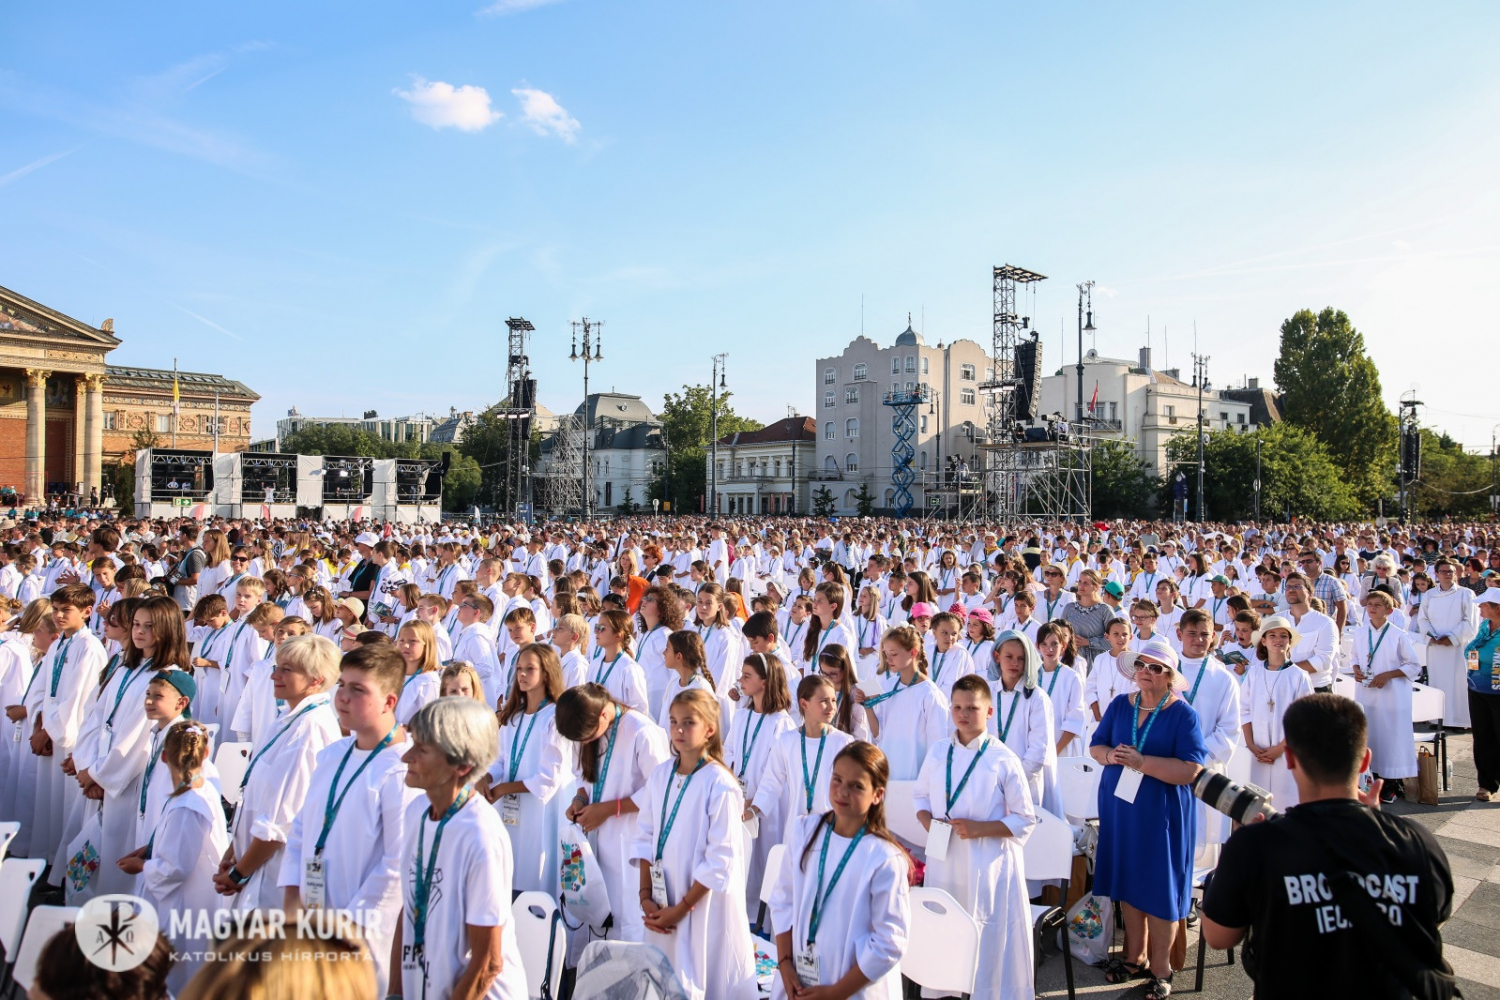 Megkezdődött a Nemzetközi Eucharisztikus Kongresszus – Sok ezer ember ünnepelt együtt a Hősök terén